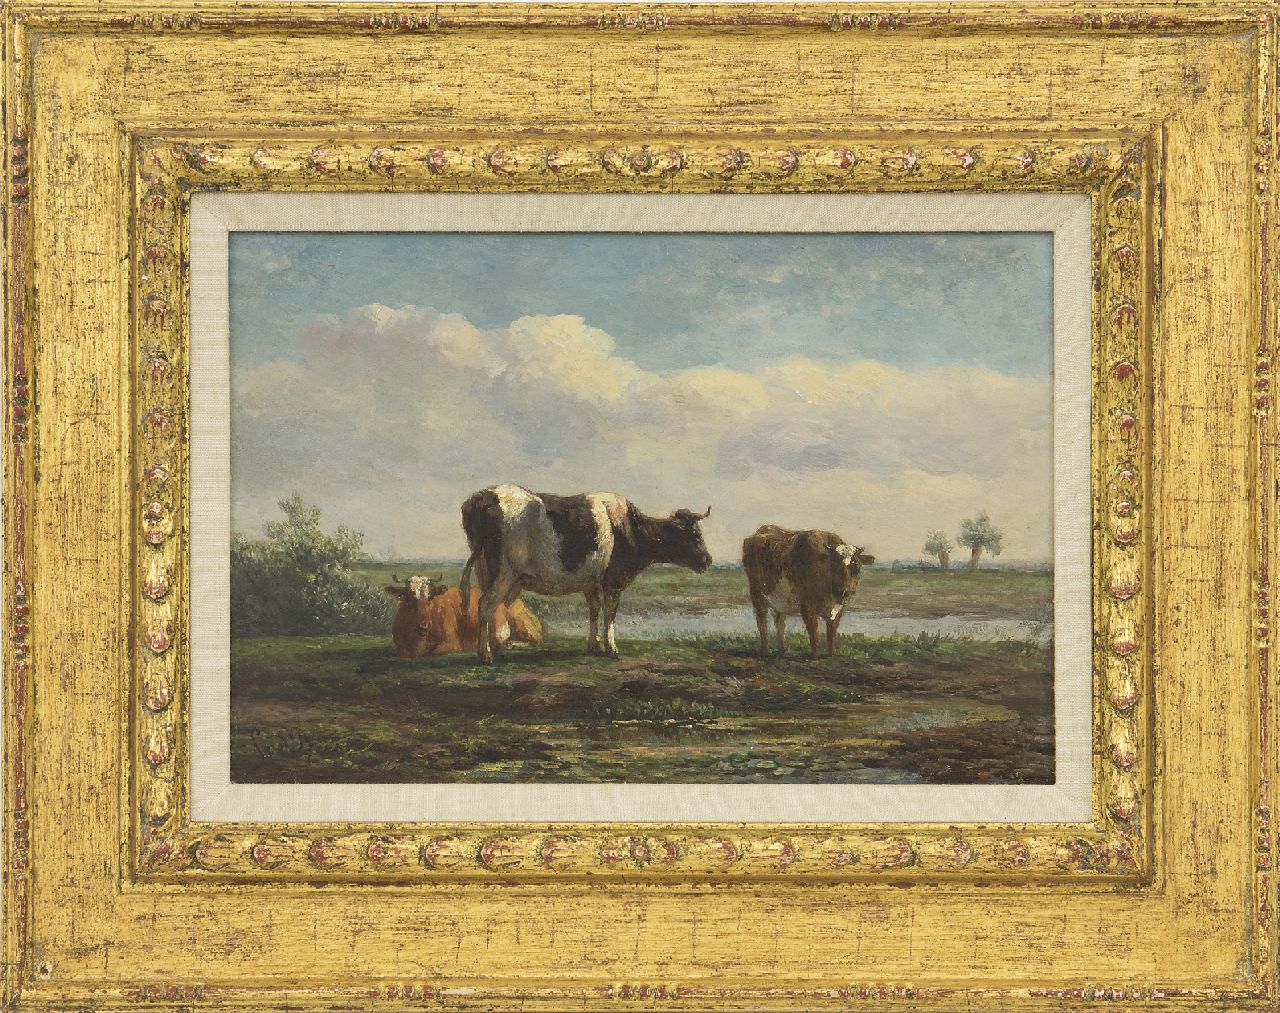 Berg S. van den | Simon van den Berg | Paintings offered for sale | Cattle in a polder landscape, oil on panel 17.6 x 26.0 cm, signed l.l.